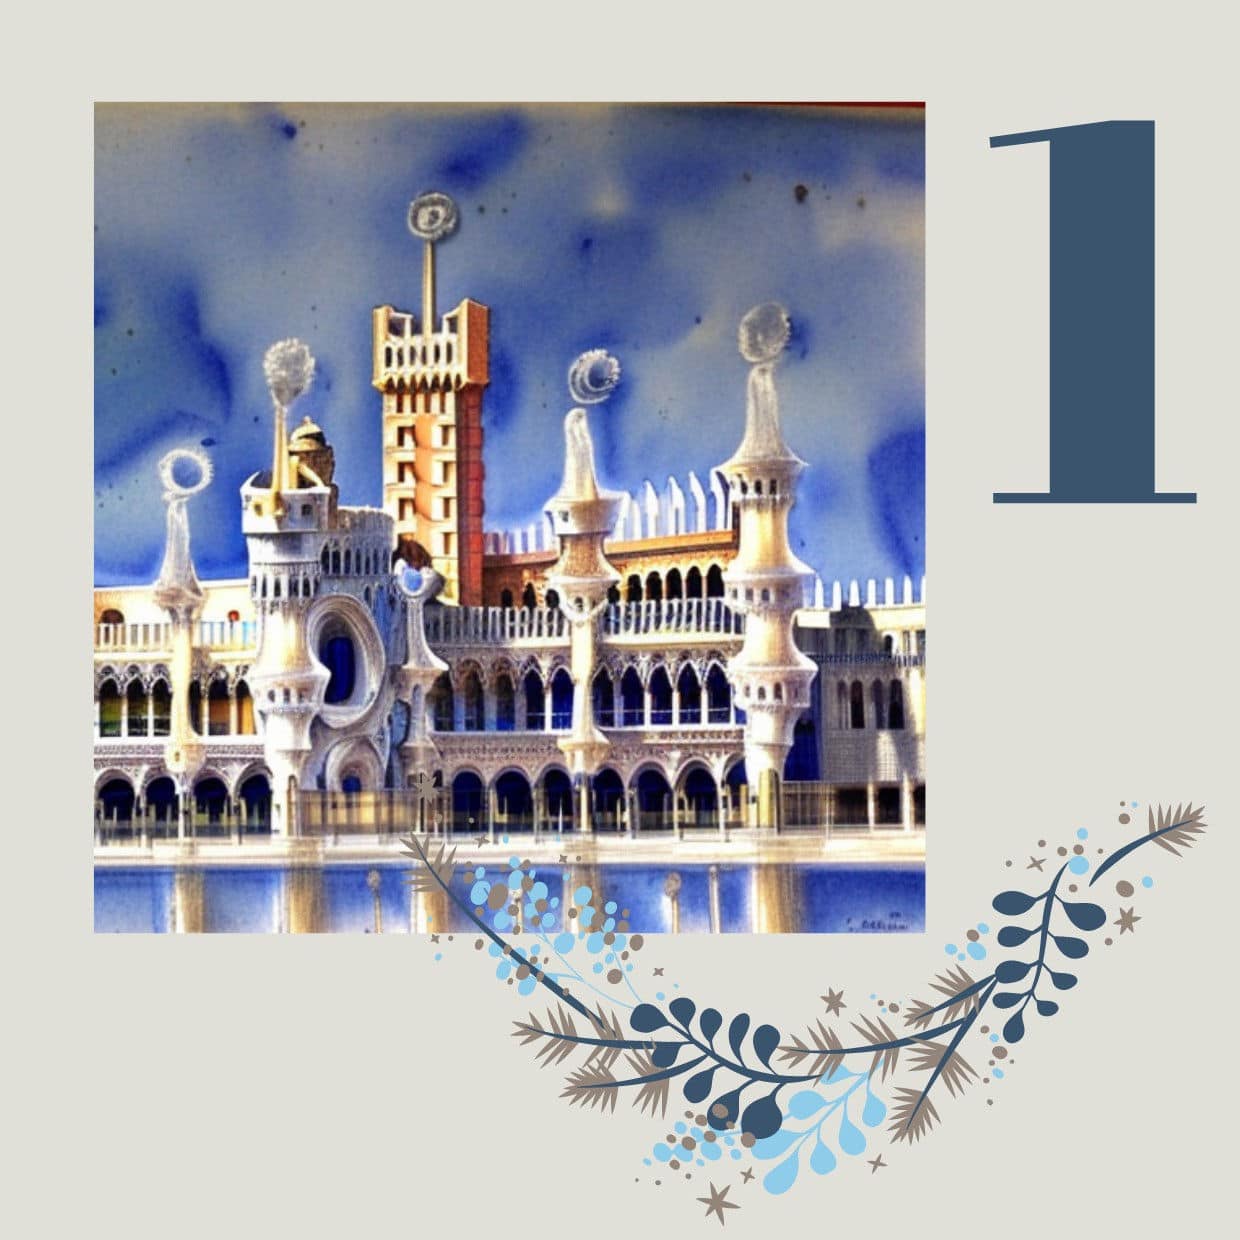 Der Dogenpalast in Venedig im Stil von Antoni Gaudí - dem spanischen Architekt der katalanischen Bewegung des Modernisme.